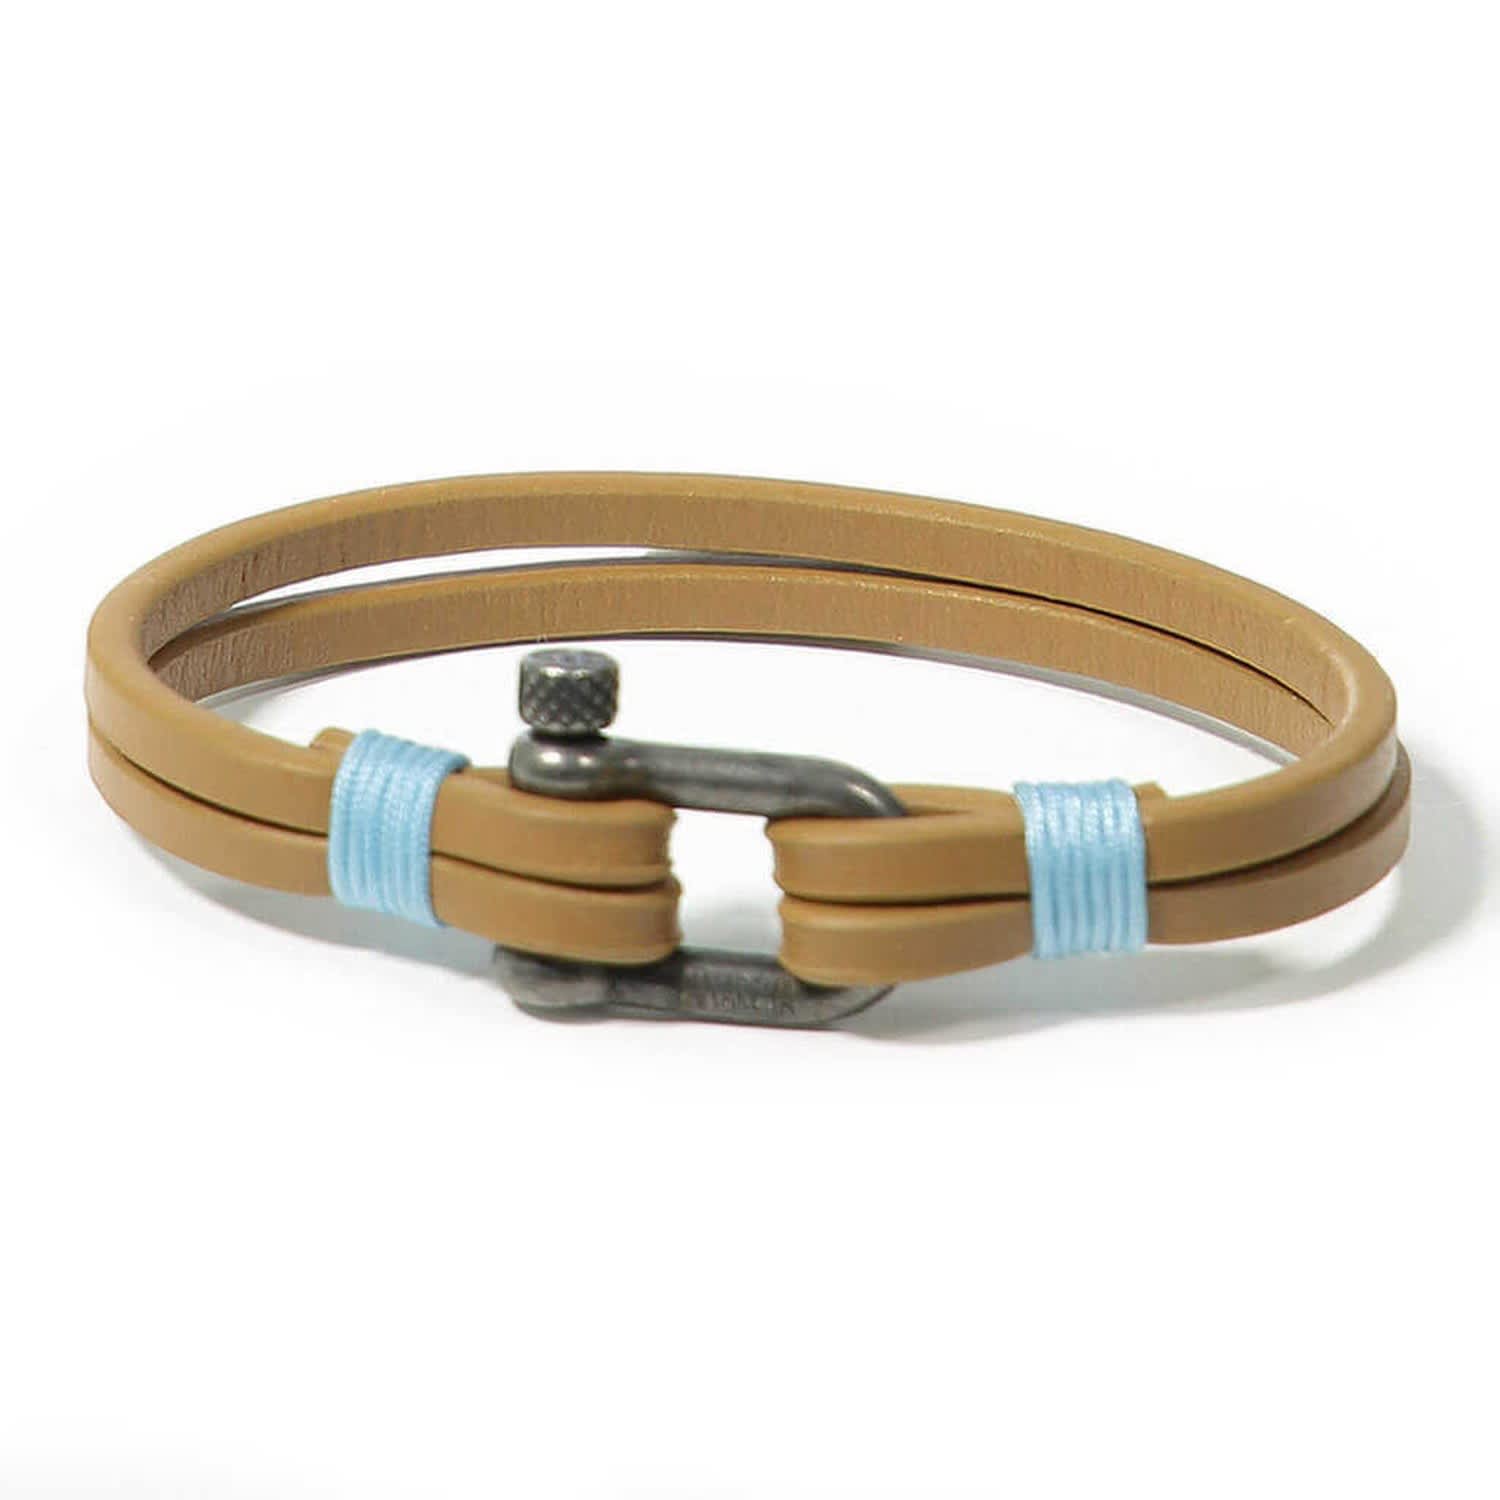 Panareha Teahupo’o Leather Bracelet